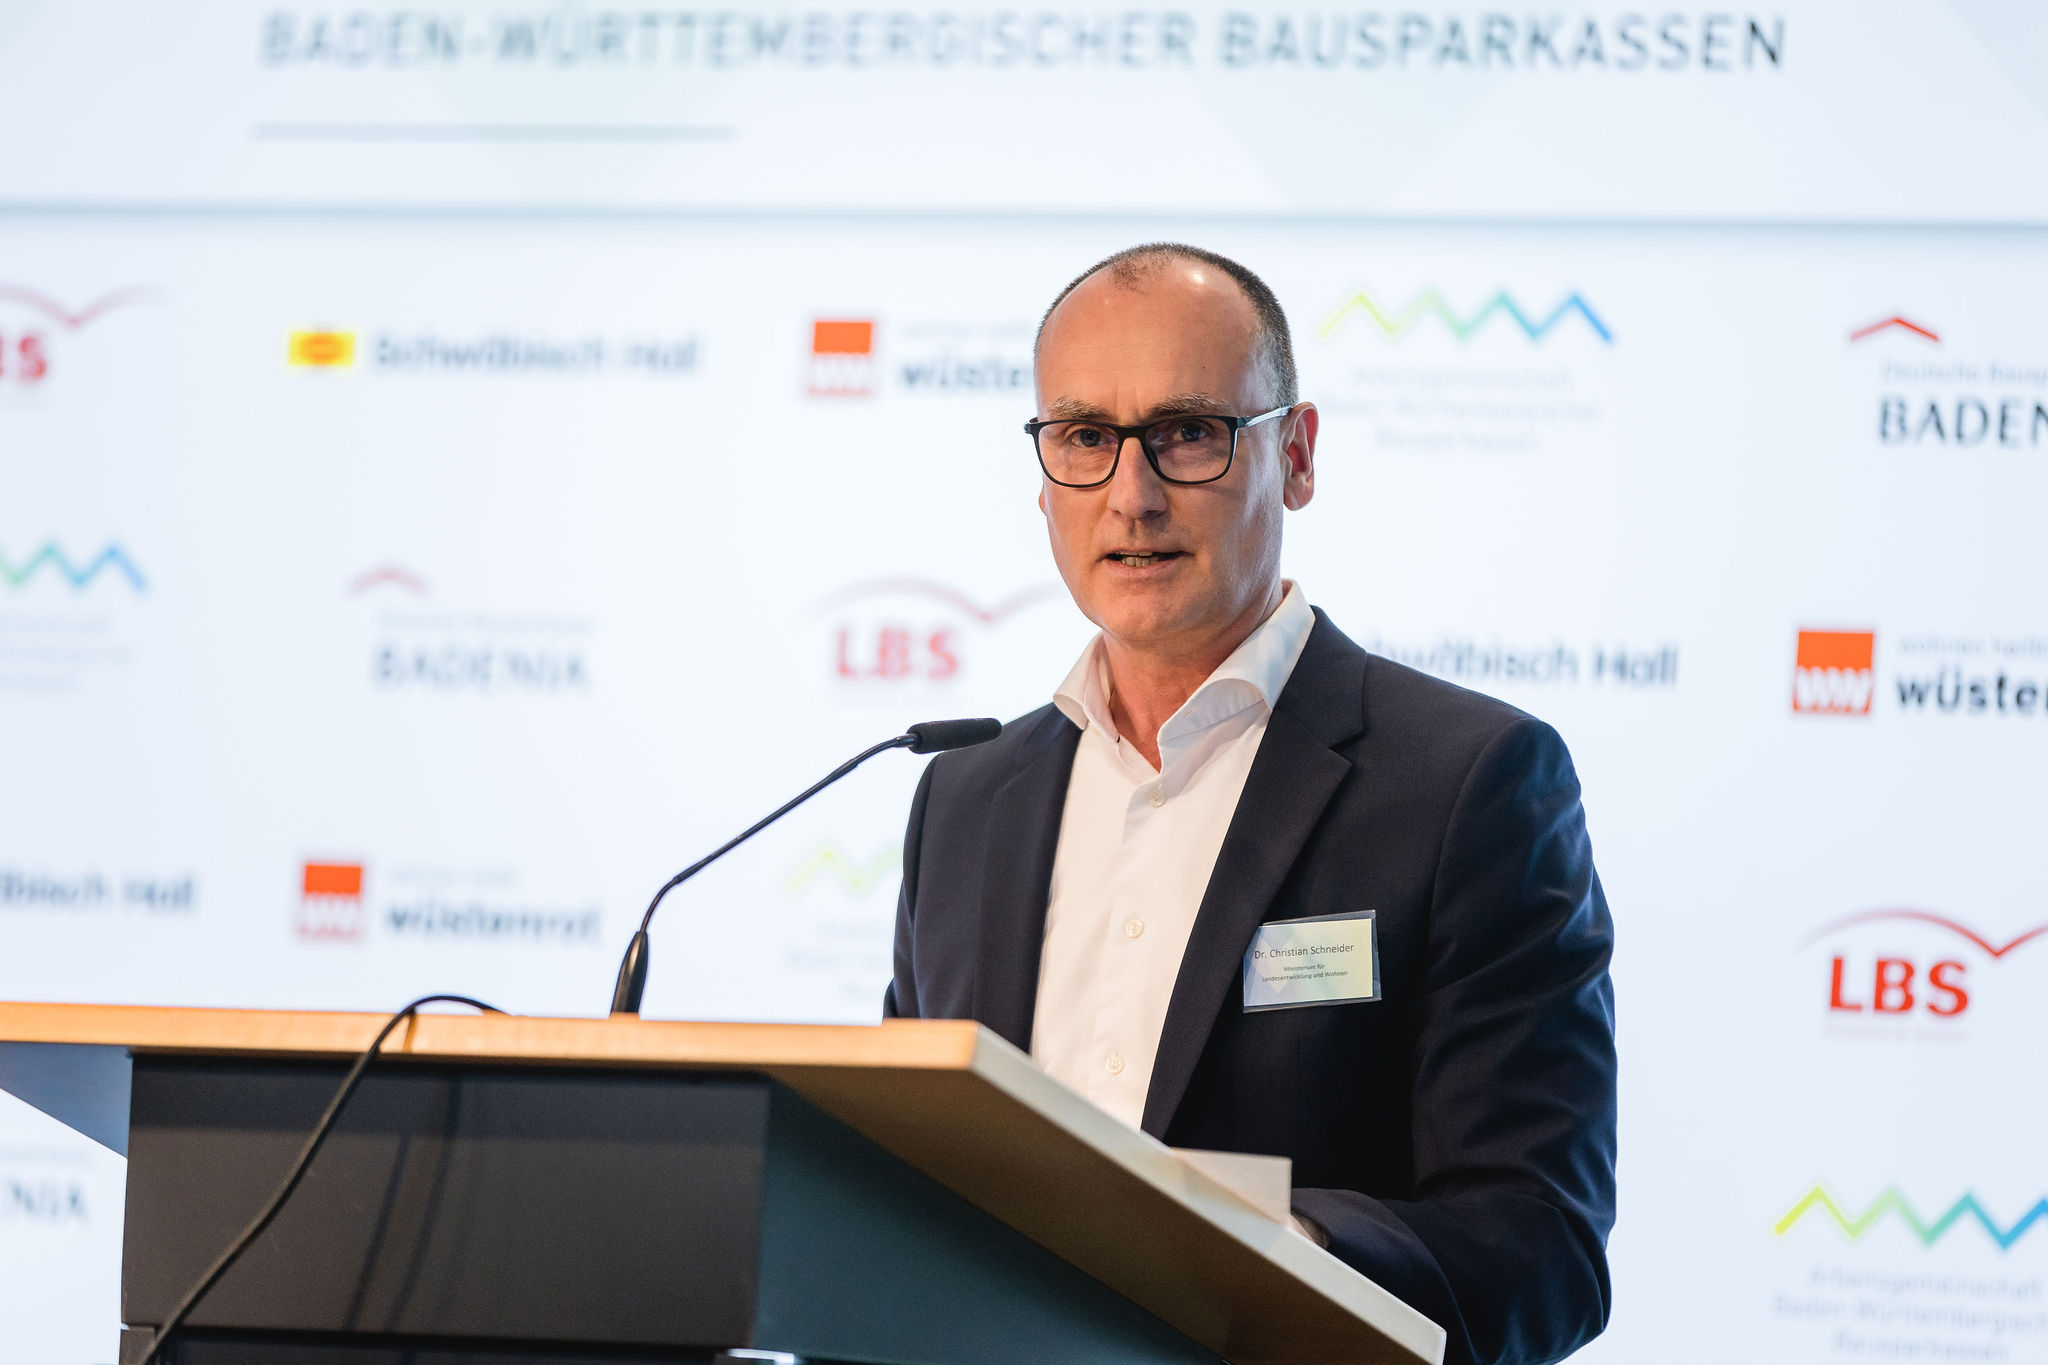 Ministerialdirektor Dr. Christian Schneider, Ministerium für Landesentwicklung und Wohnen Baden-Württemberg